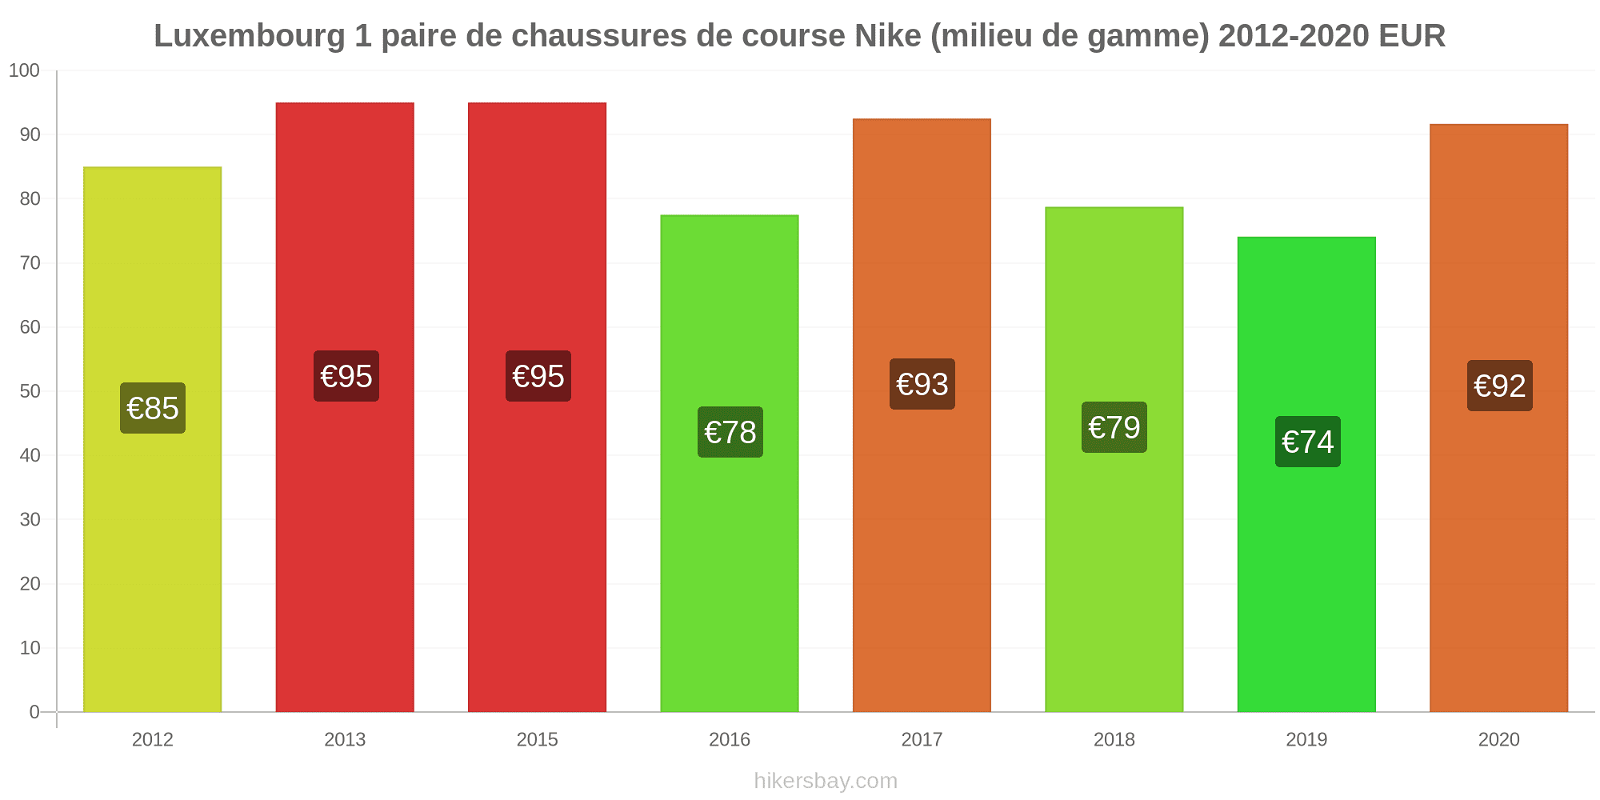 Luxembourg changements de prix 1 paire de chaussures de course Nike (milieu de gamme) hikersbay.com